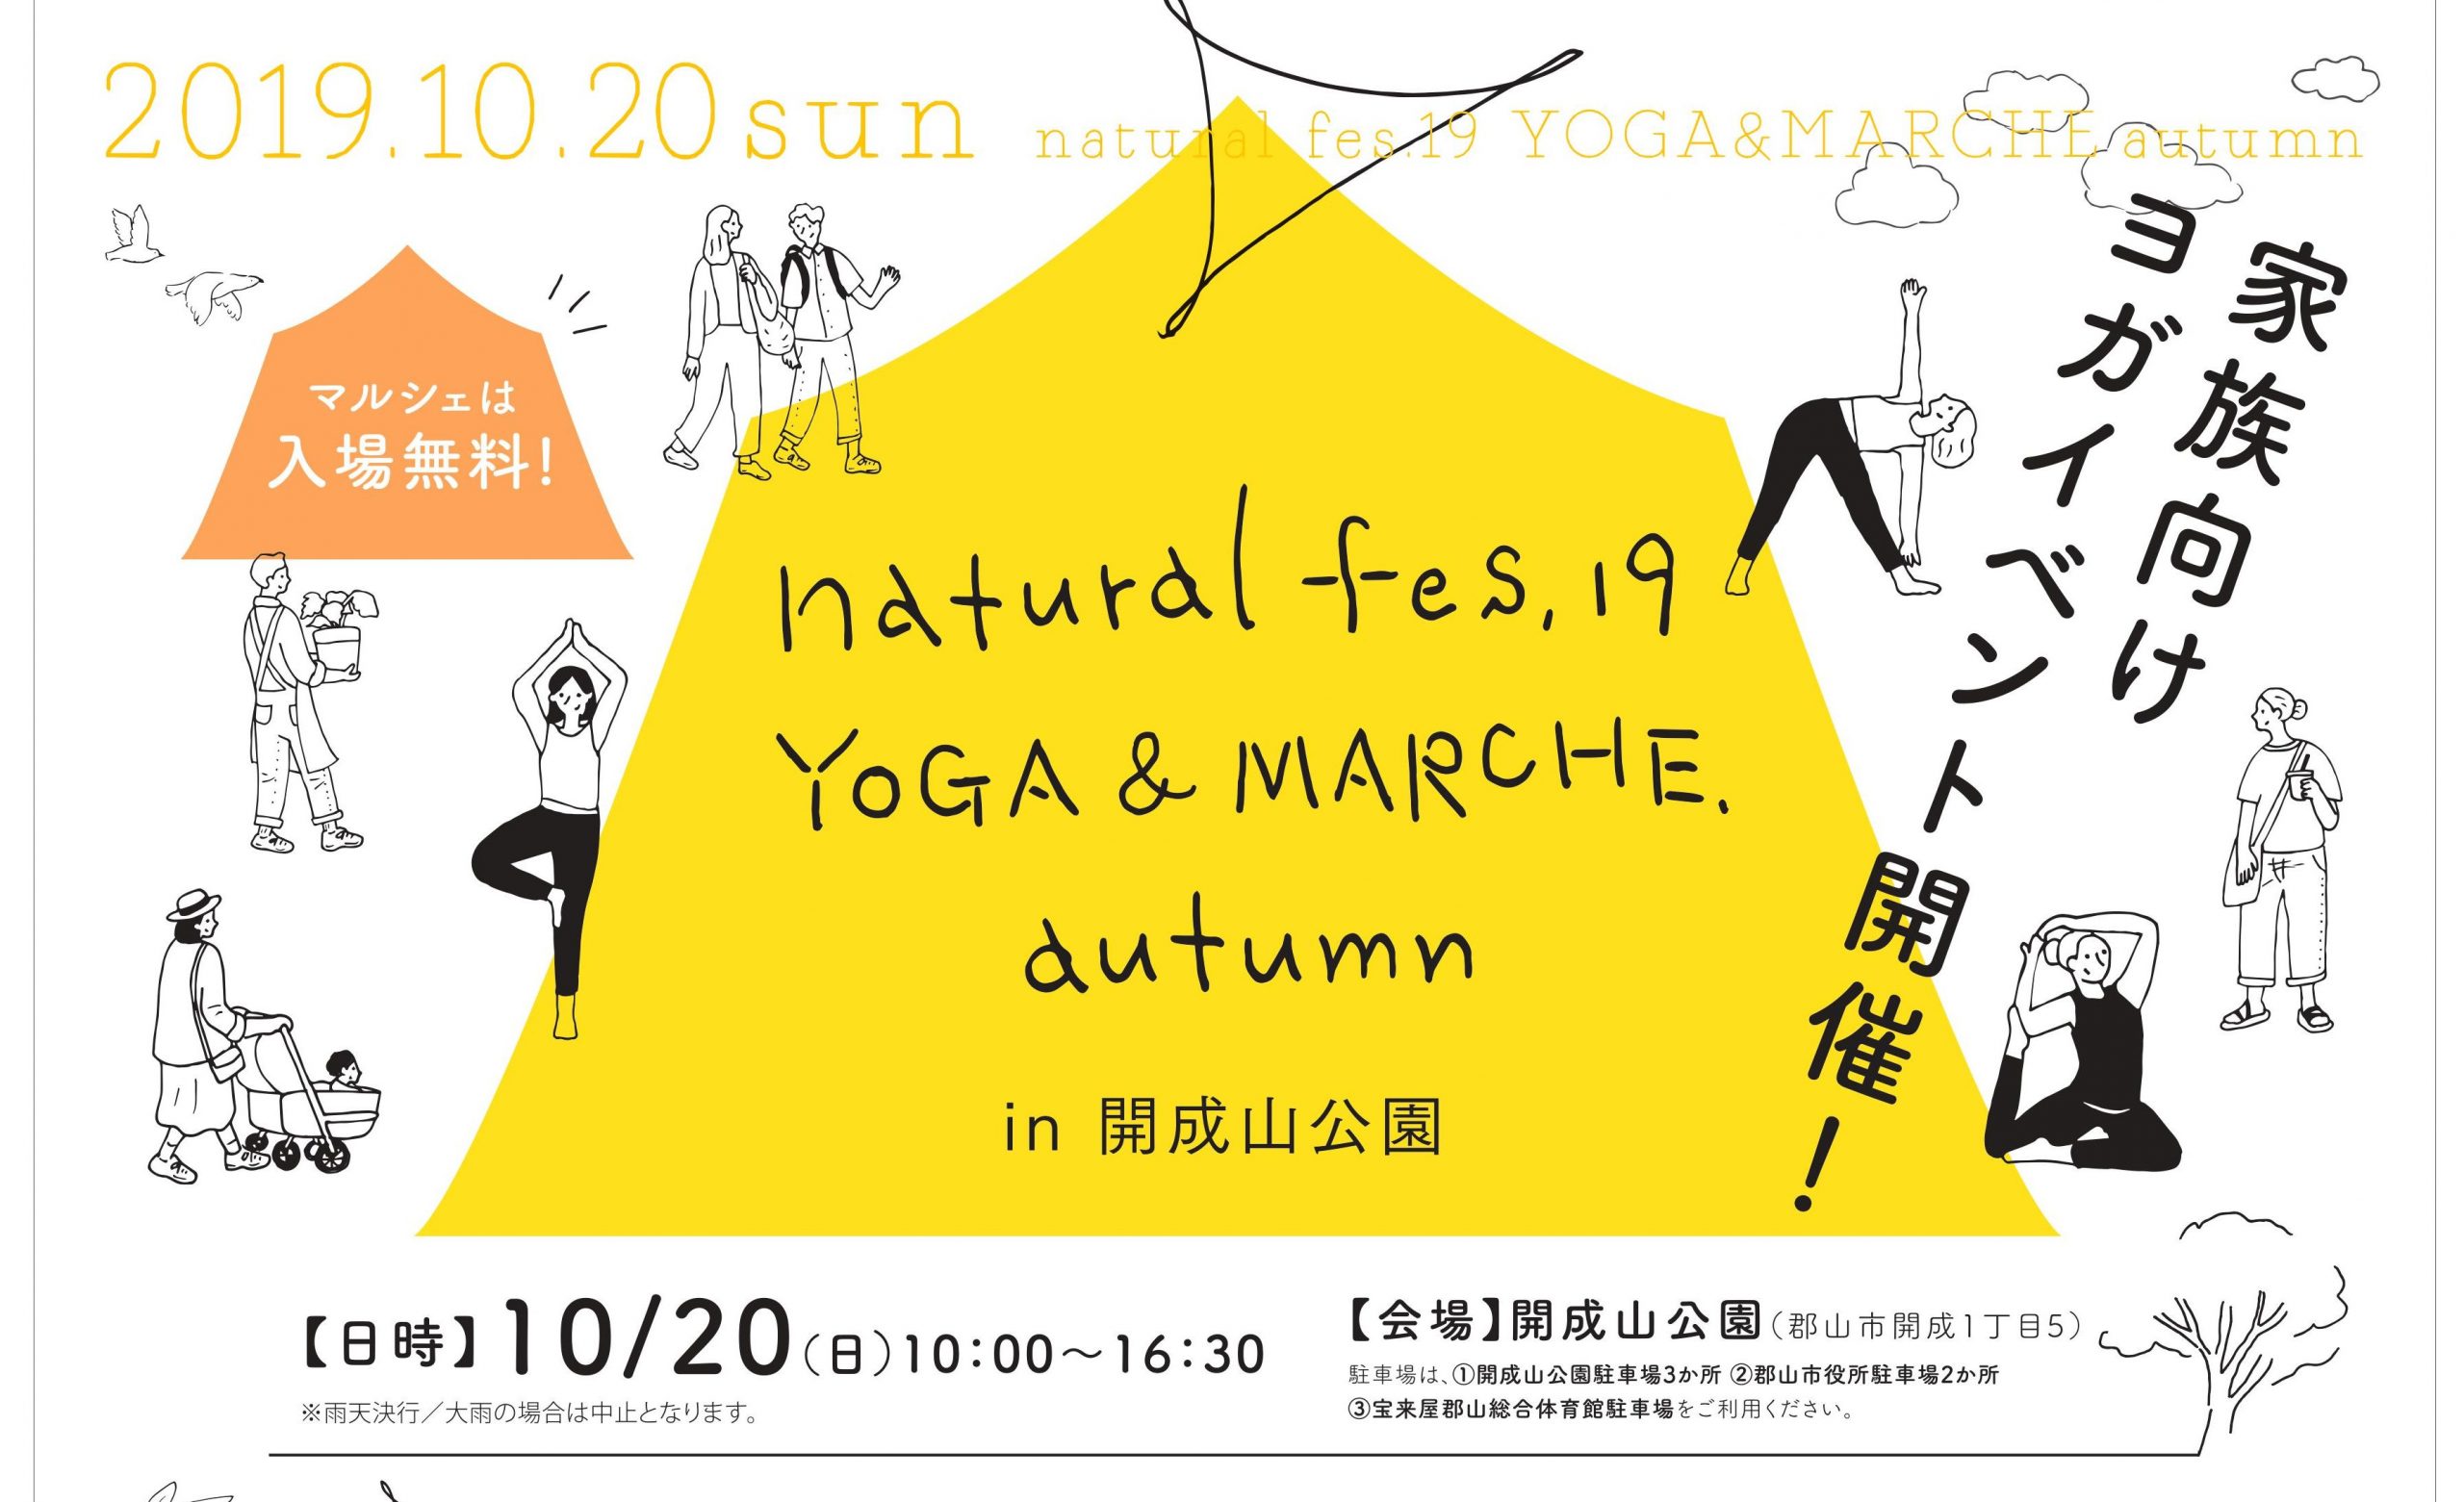 家族向けヨガイベント開催 Naturalfes 19 Yoga Marche Autumn